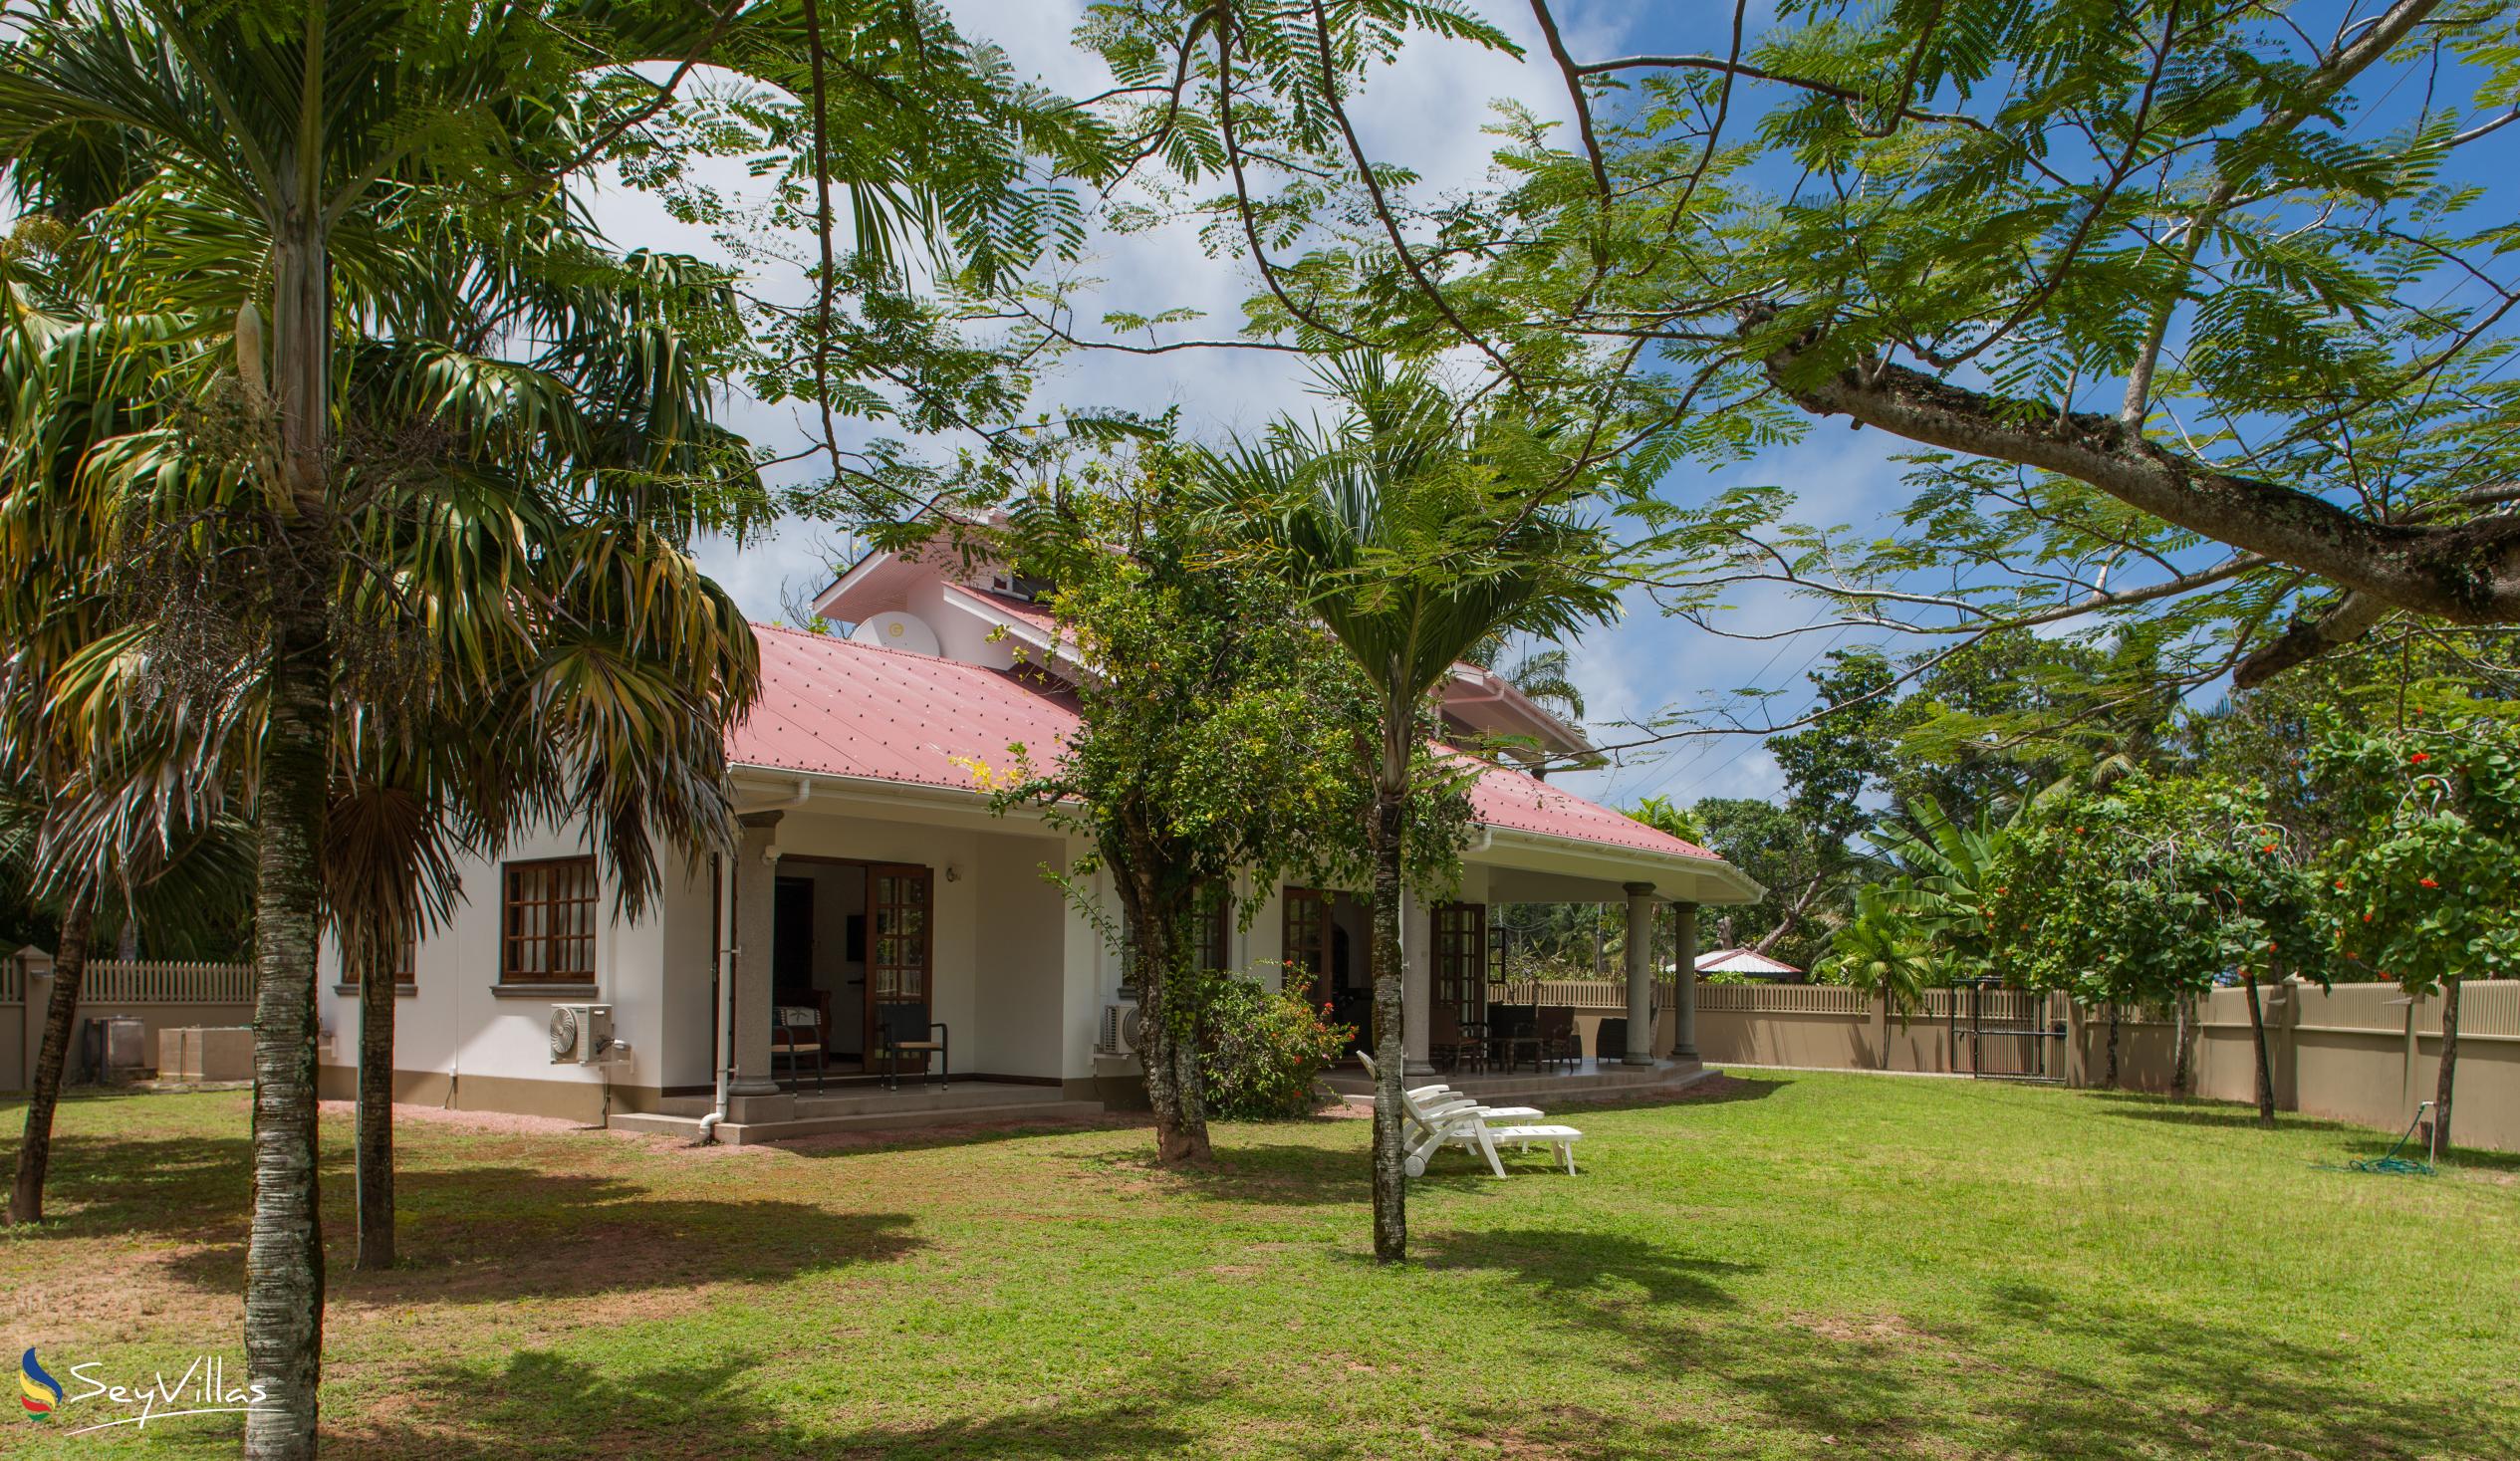 Foto 6: Villa Saint Sauveur - Aussenbereich - Praslin (Seychellen)